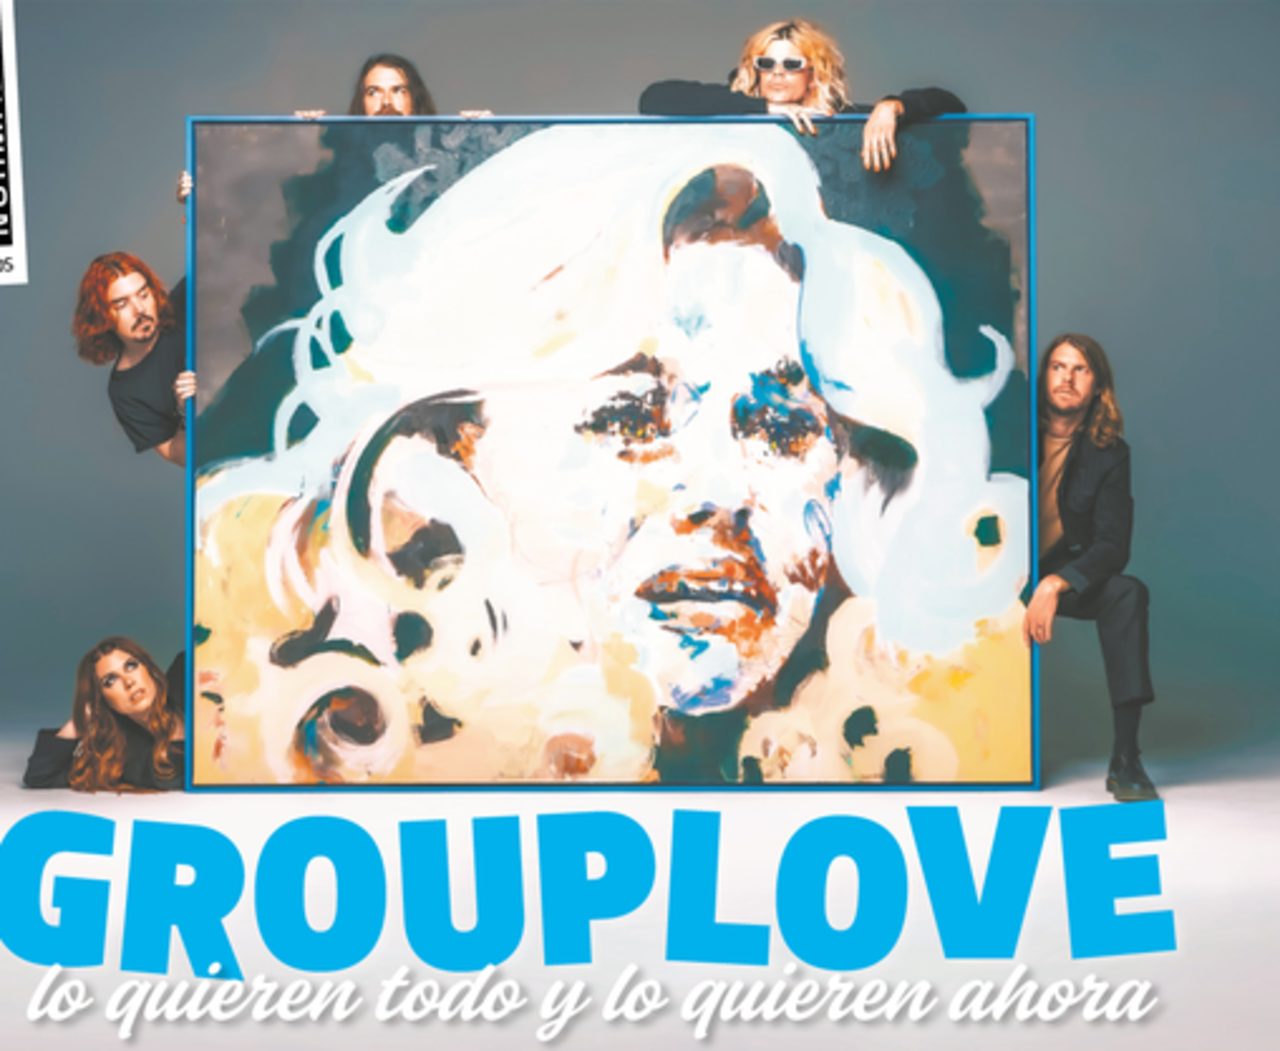 Sus canciones se tocan en festivales y en bandas sonoras, Grouplove regresa con nuevo disco